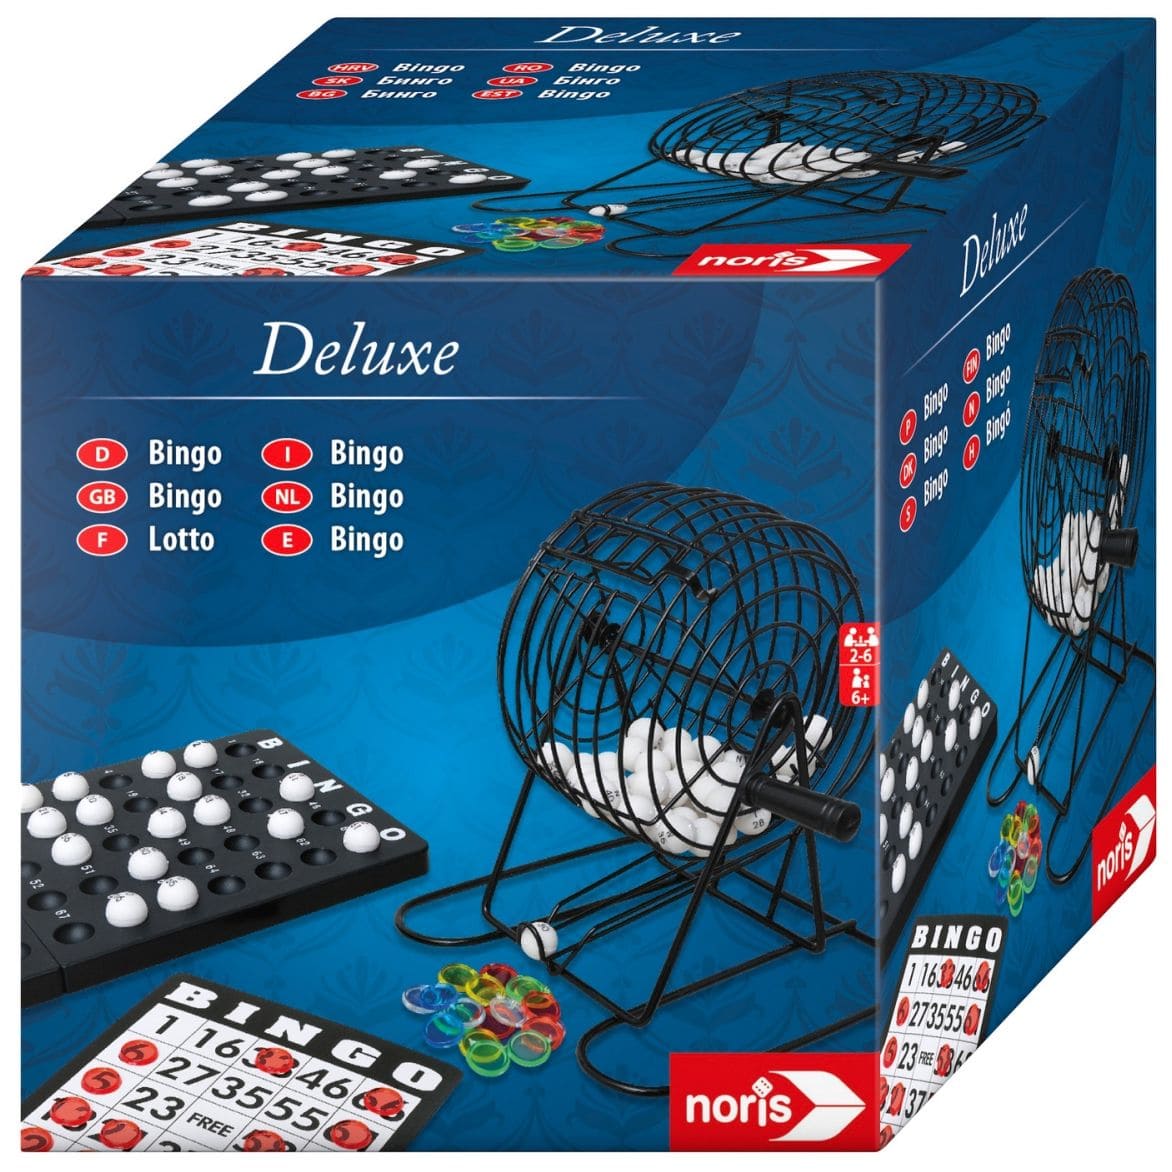 Deluxe Bingo 